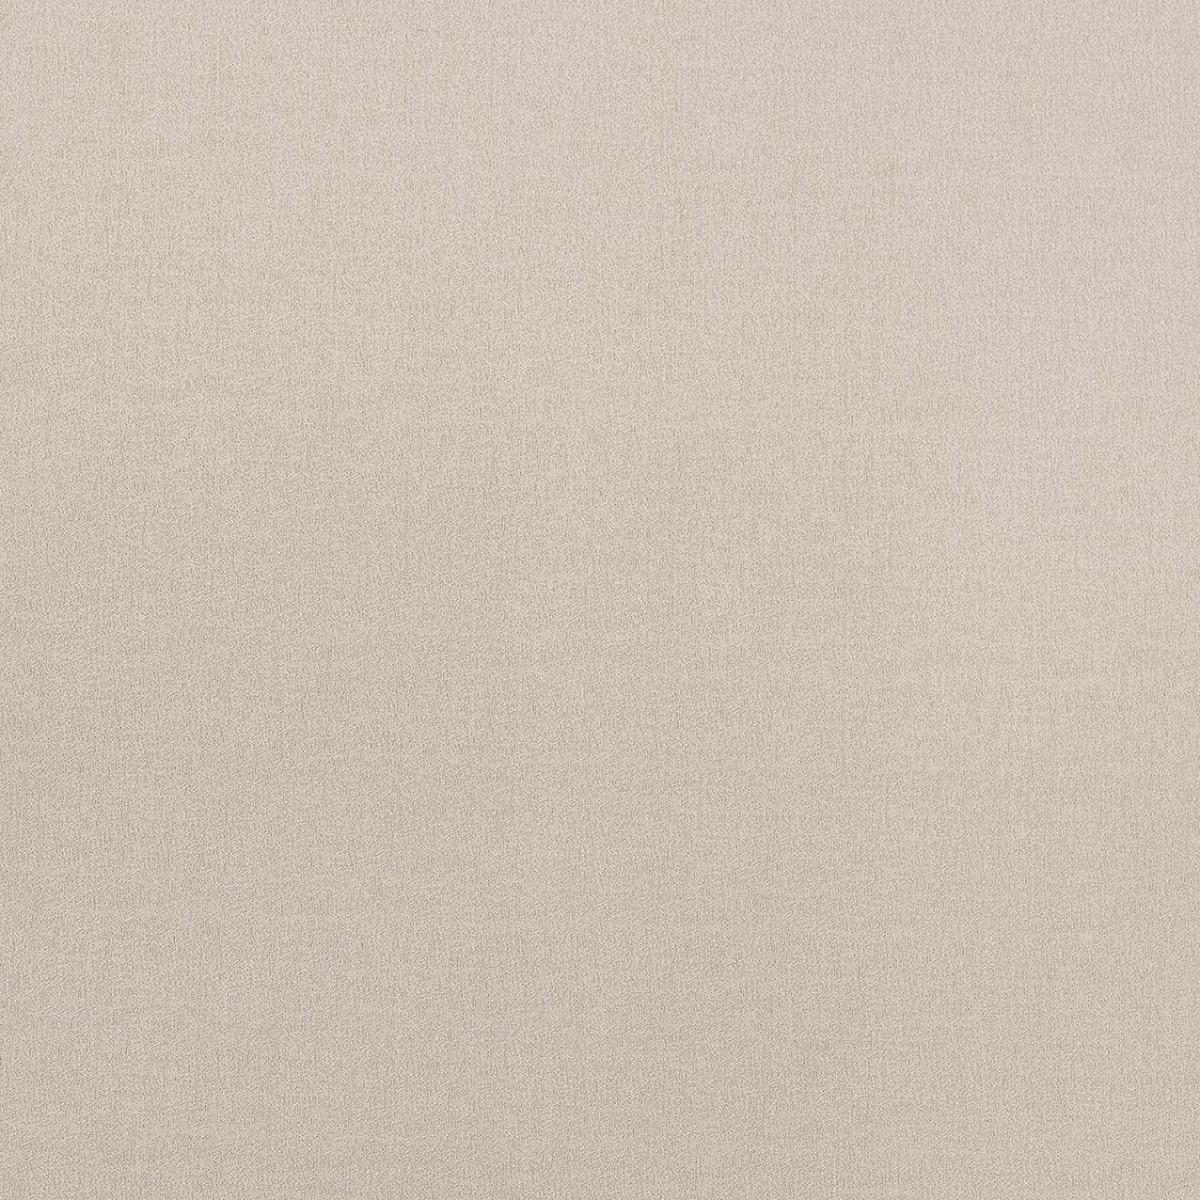  Портьерная ткань NULLA IVORY, ширина 300 см  - Фото